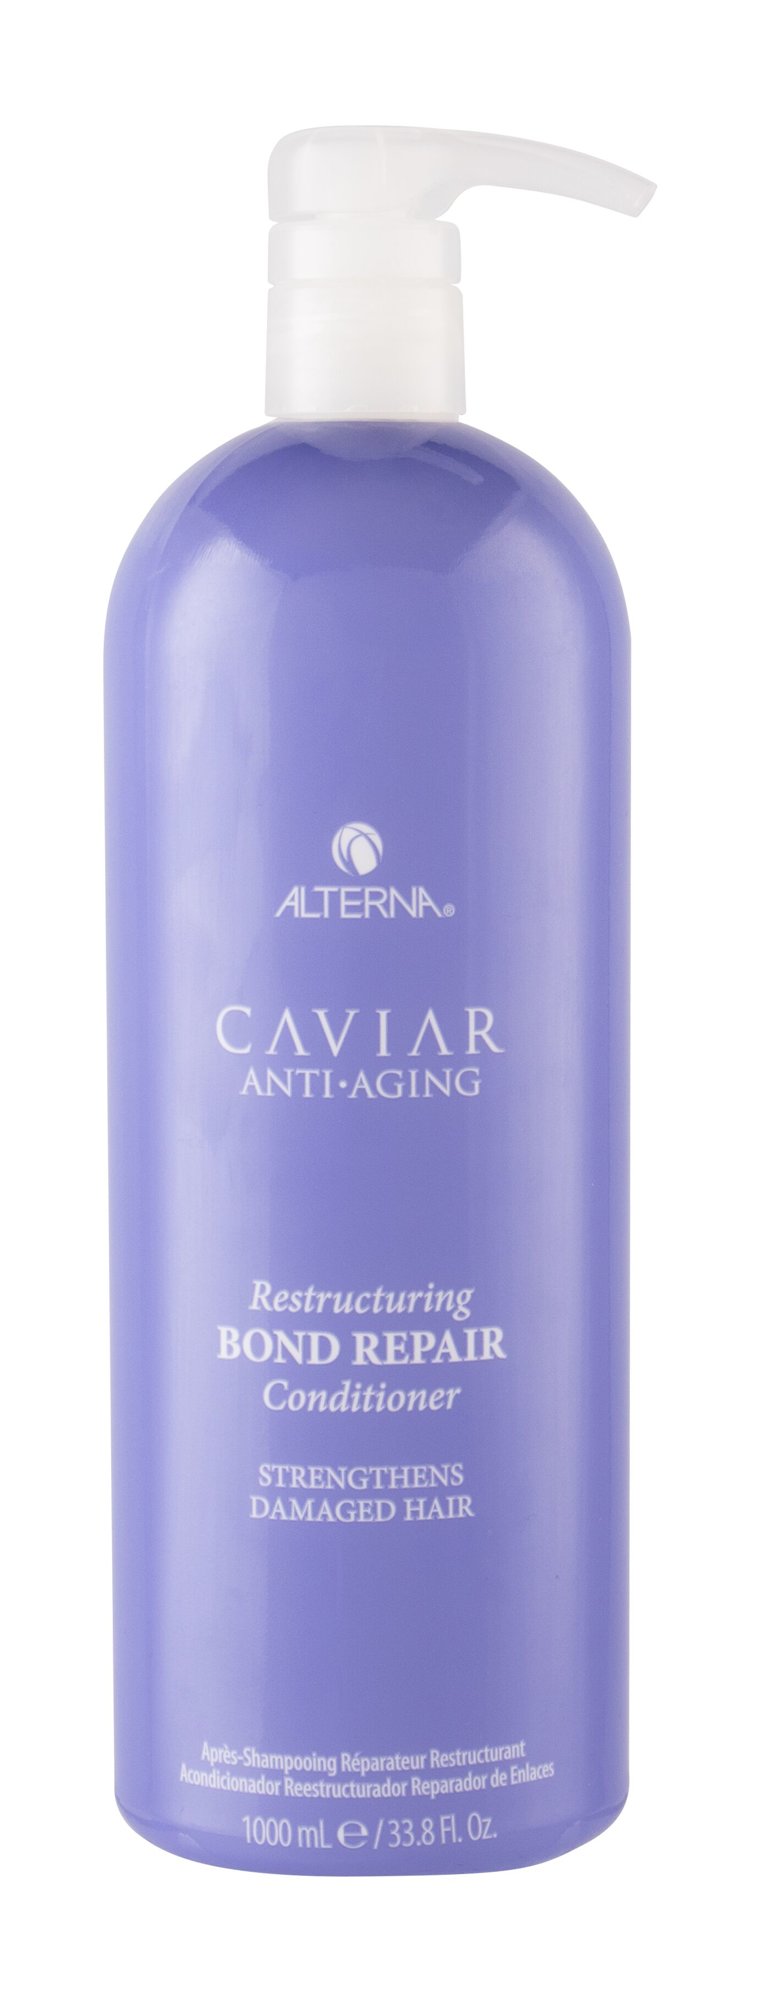 Alterna Caviar Anti-Aging Restructuring Bond Repair 1000ml kondicionierius (Pažeista pakuotė)